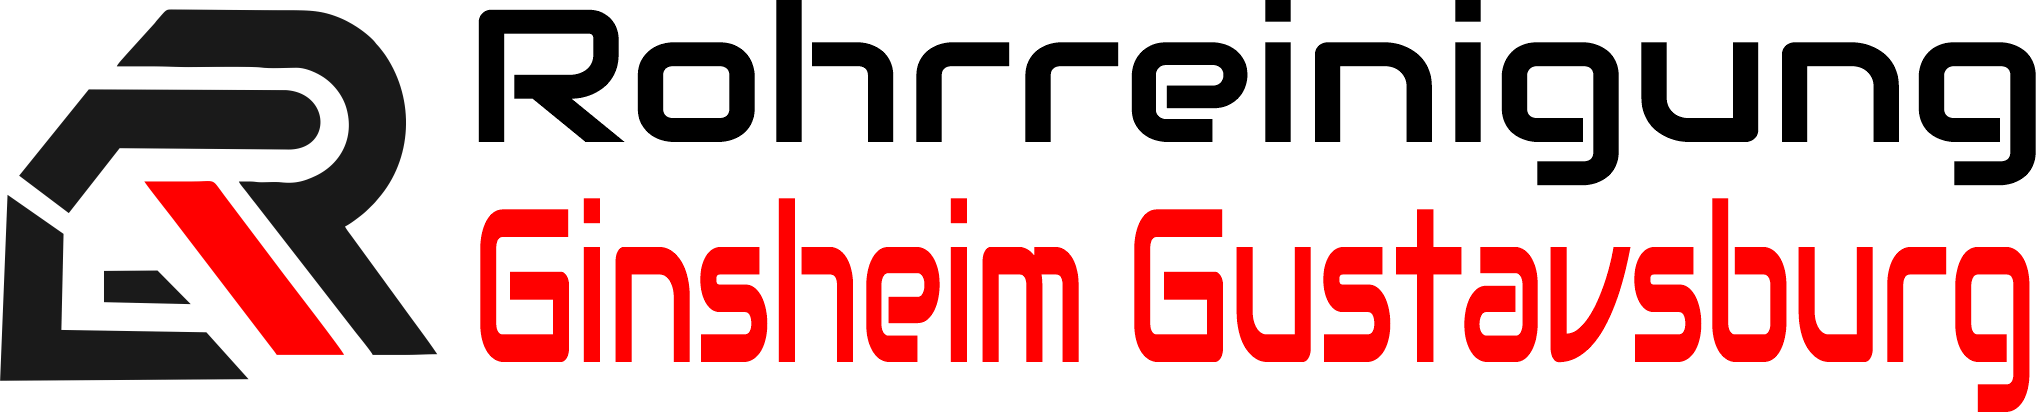 Rohrreinigung Ginsheim Gustavsburg Logo